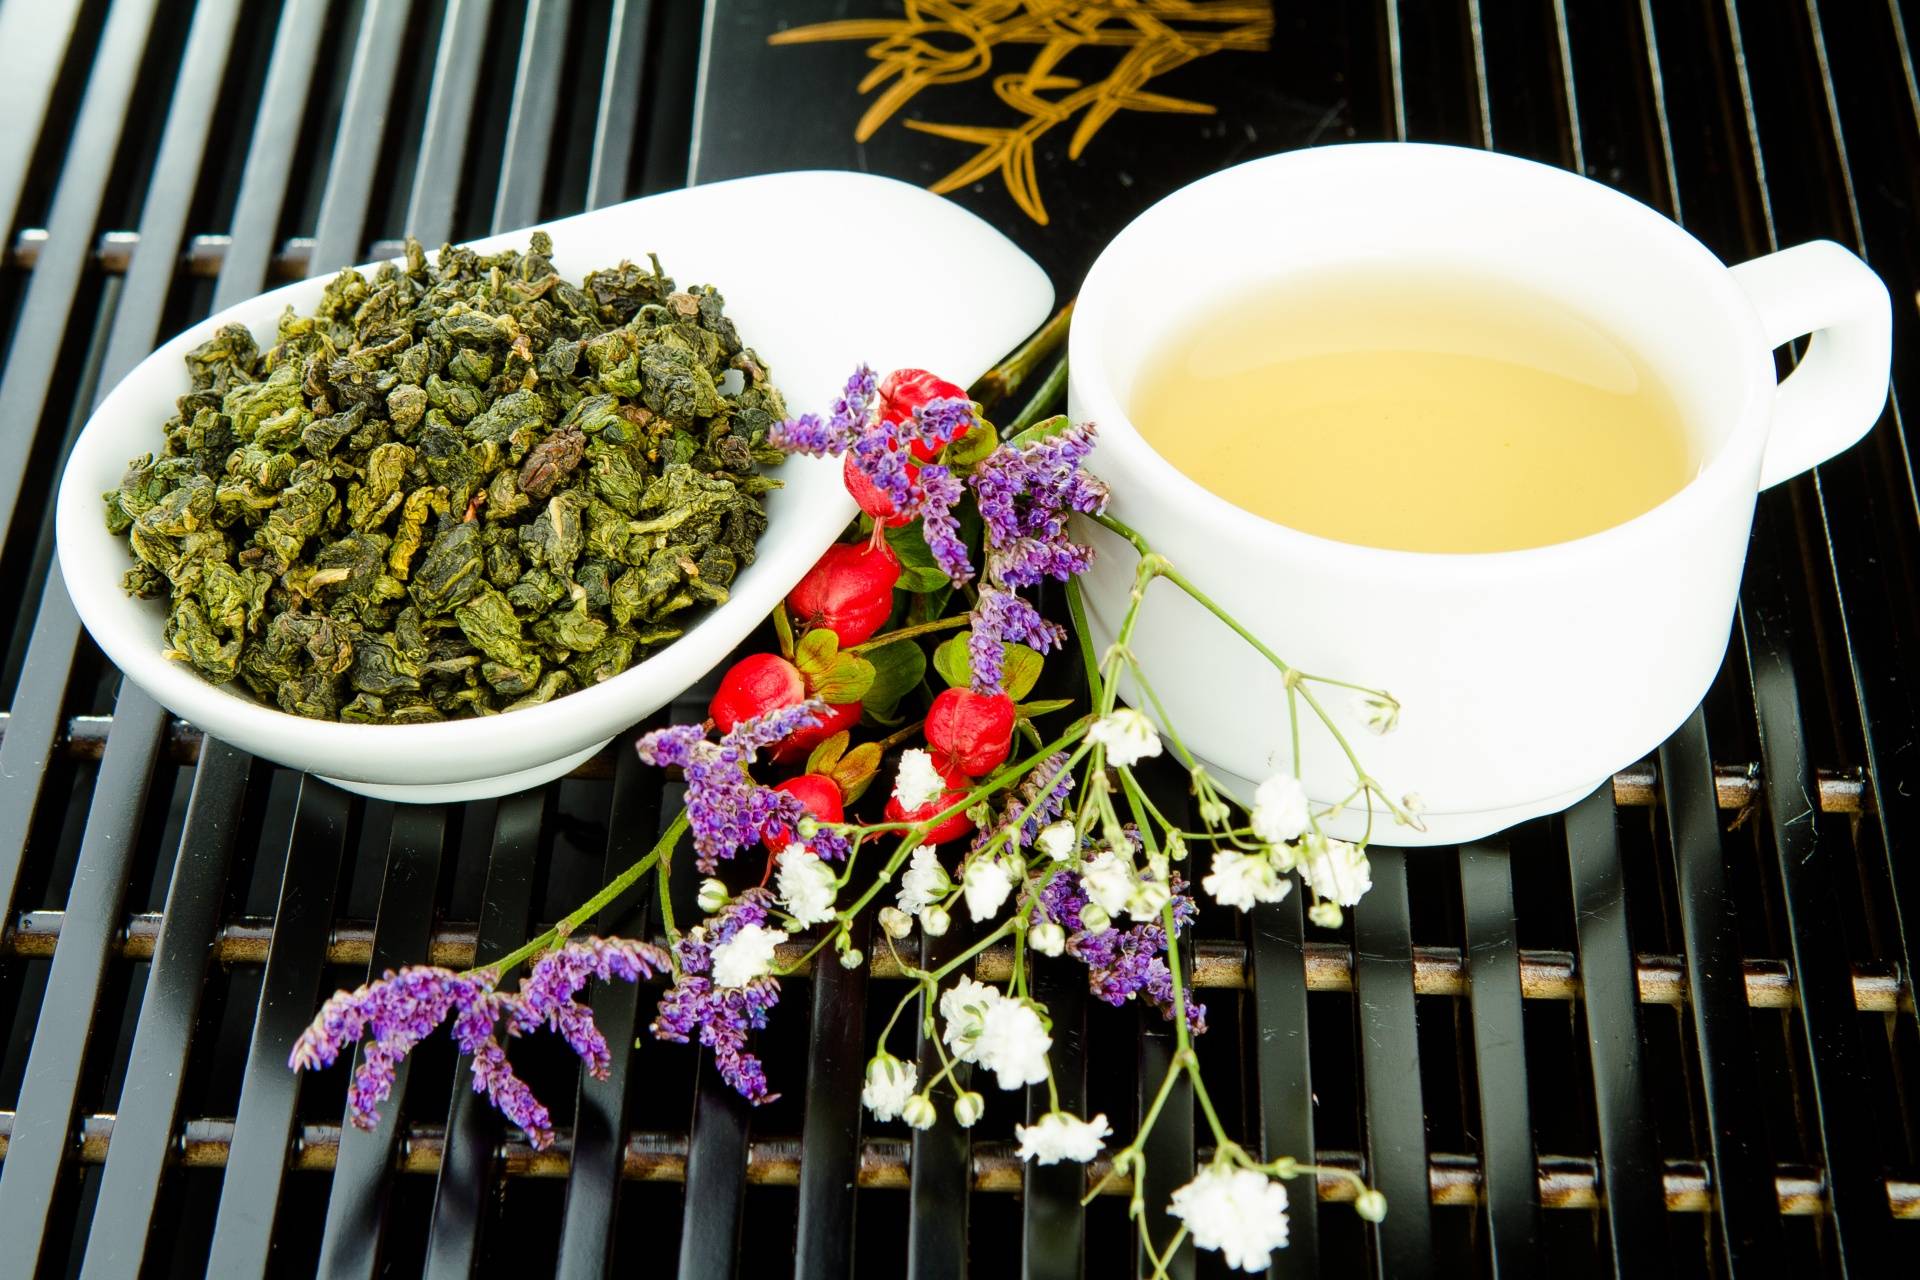 Китайский чай - виды, полезные свойства, цены